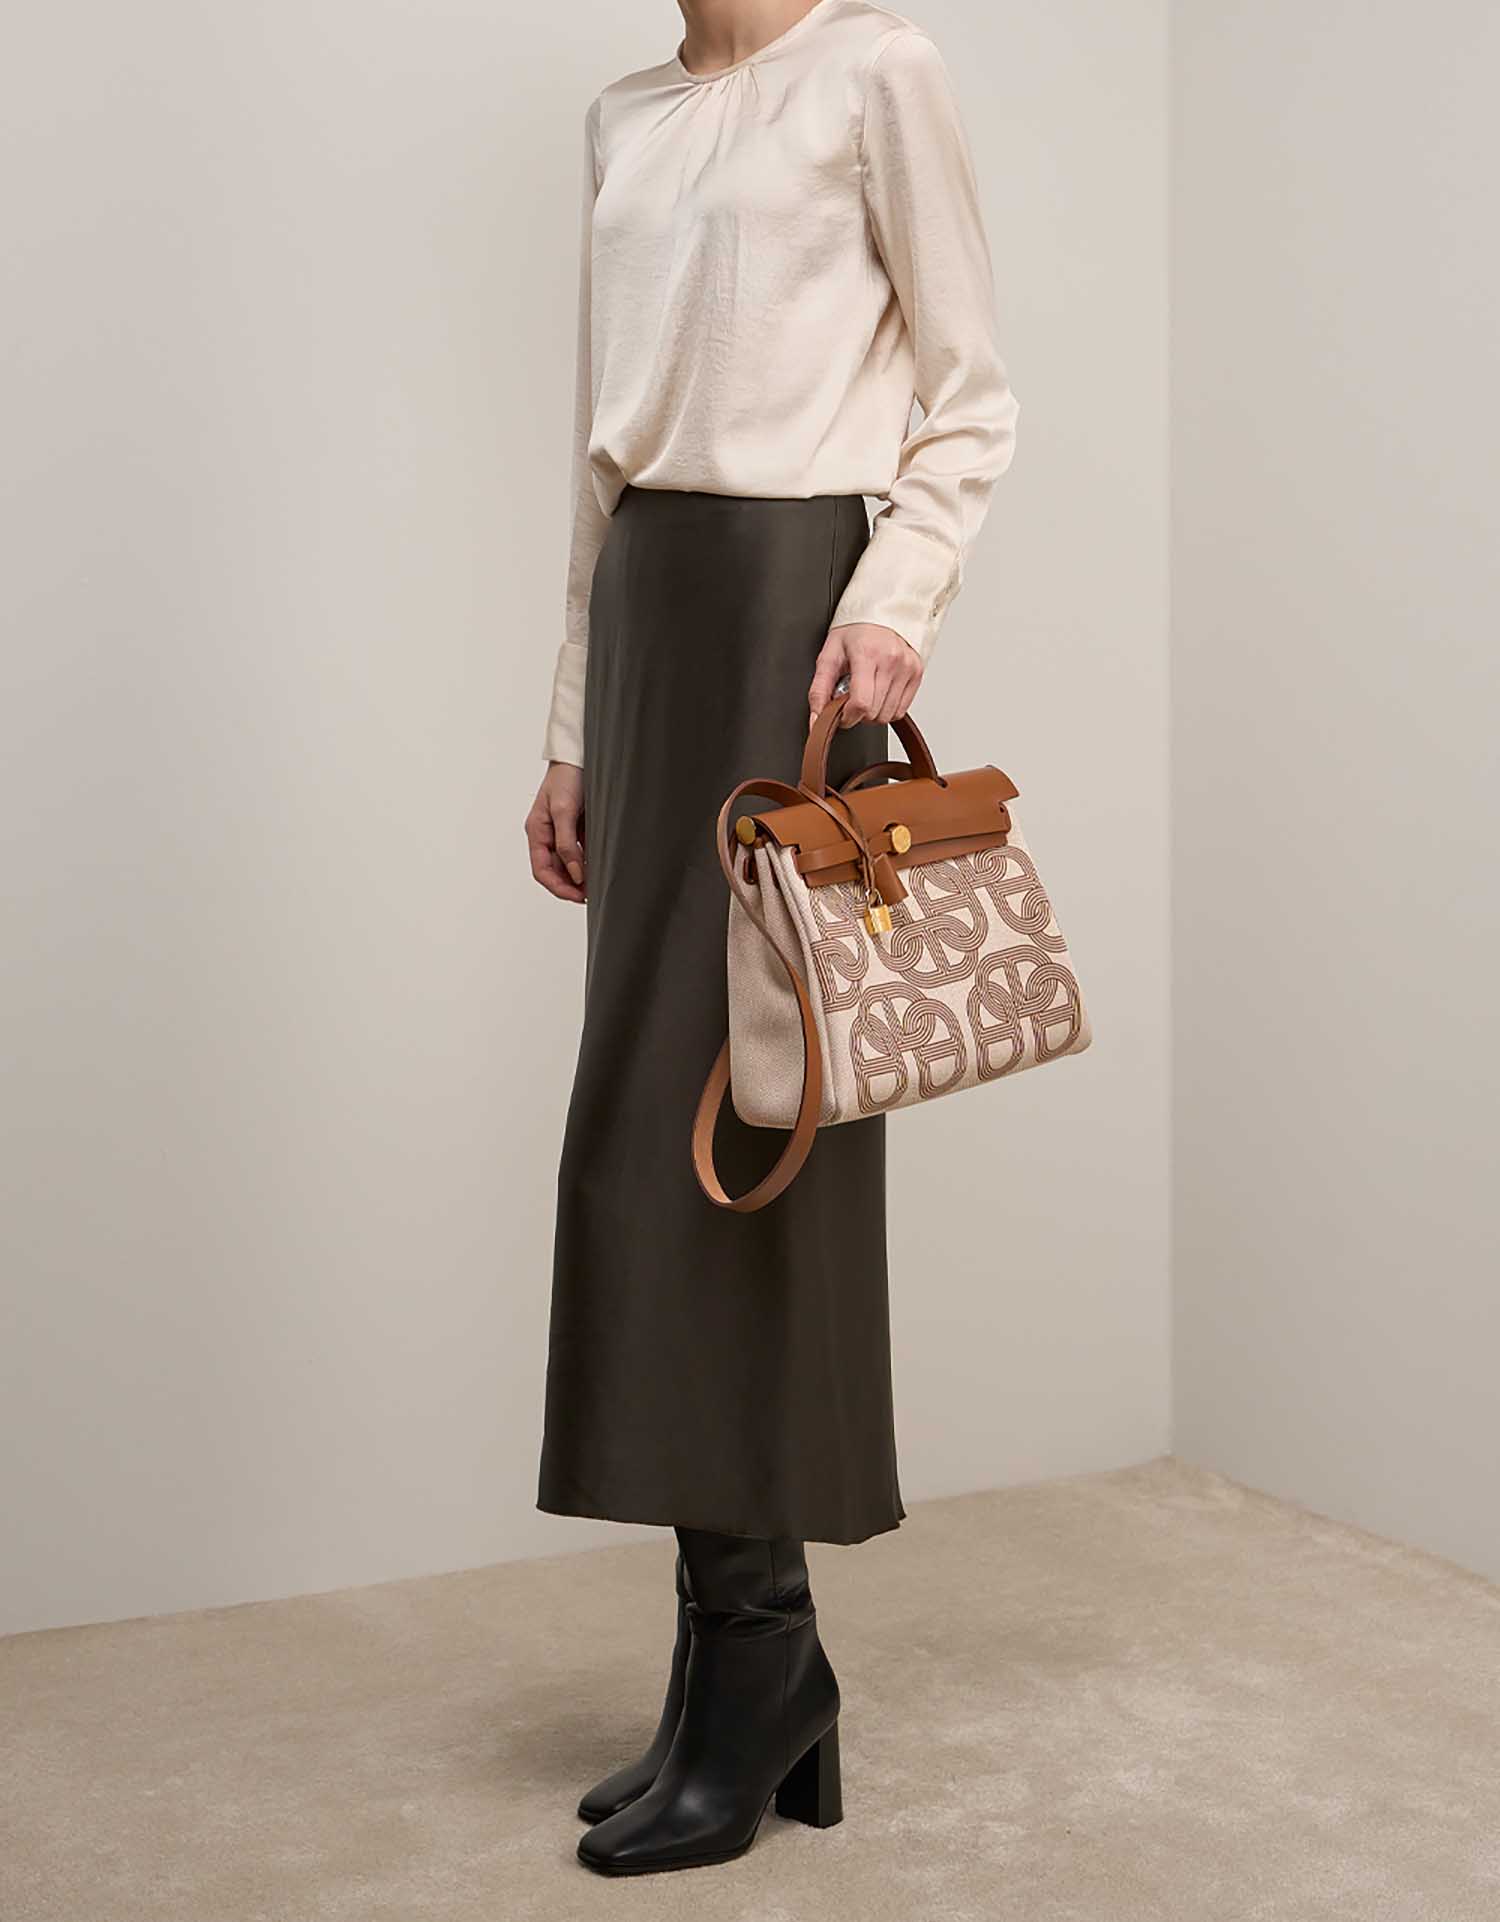 Hermès Herbag 31 Fauve-Ecru-Beige on Model | Sell your designer bag on Saclab.com